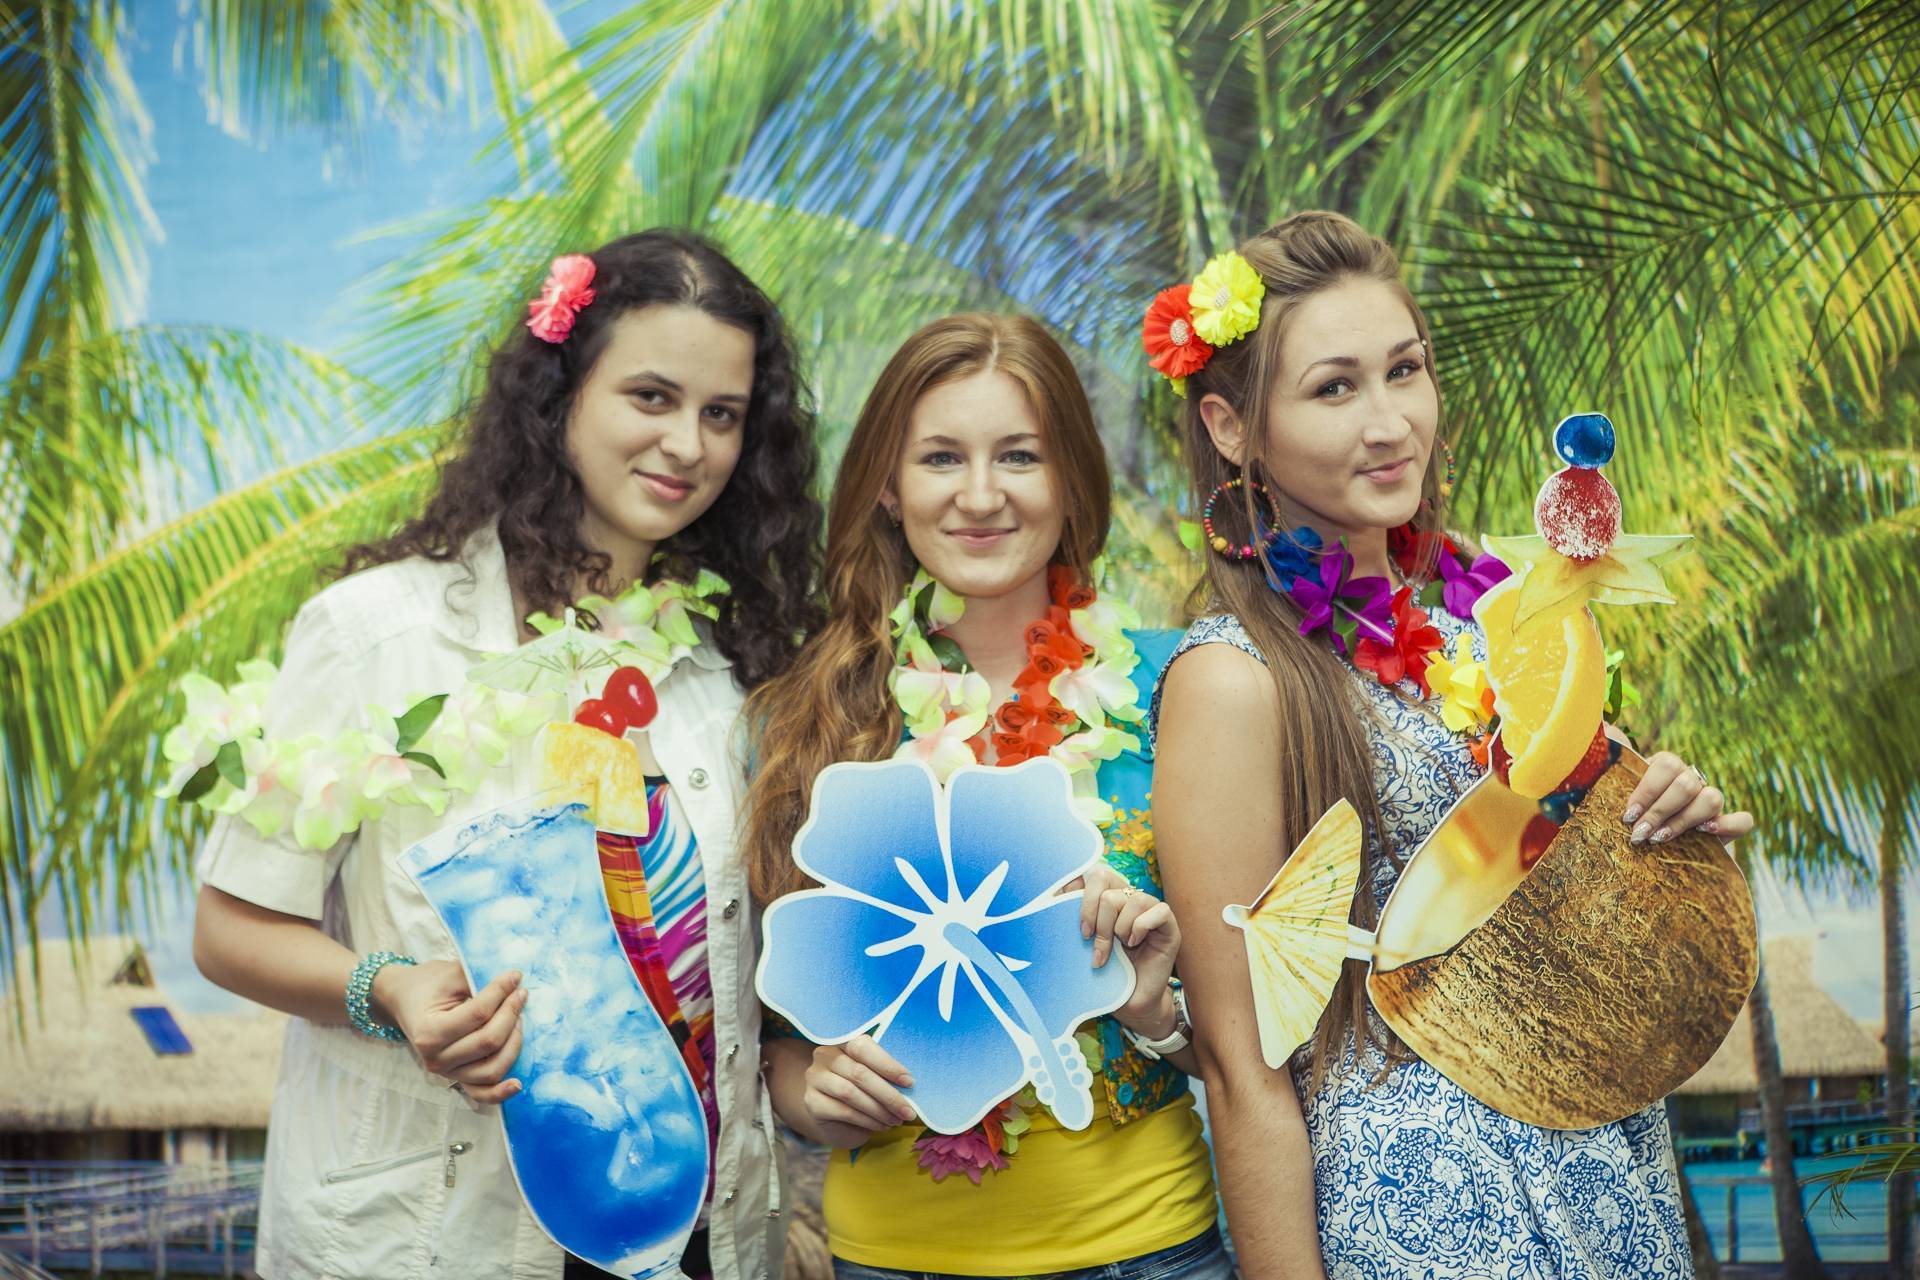 Вечеринка в гавайском стиле: что одеть, конкурсы, музыка. | фиеста - детали праздника!